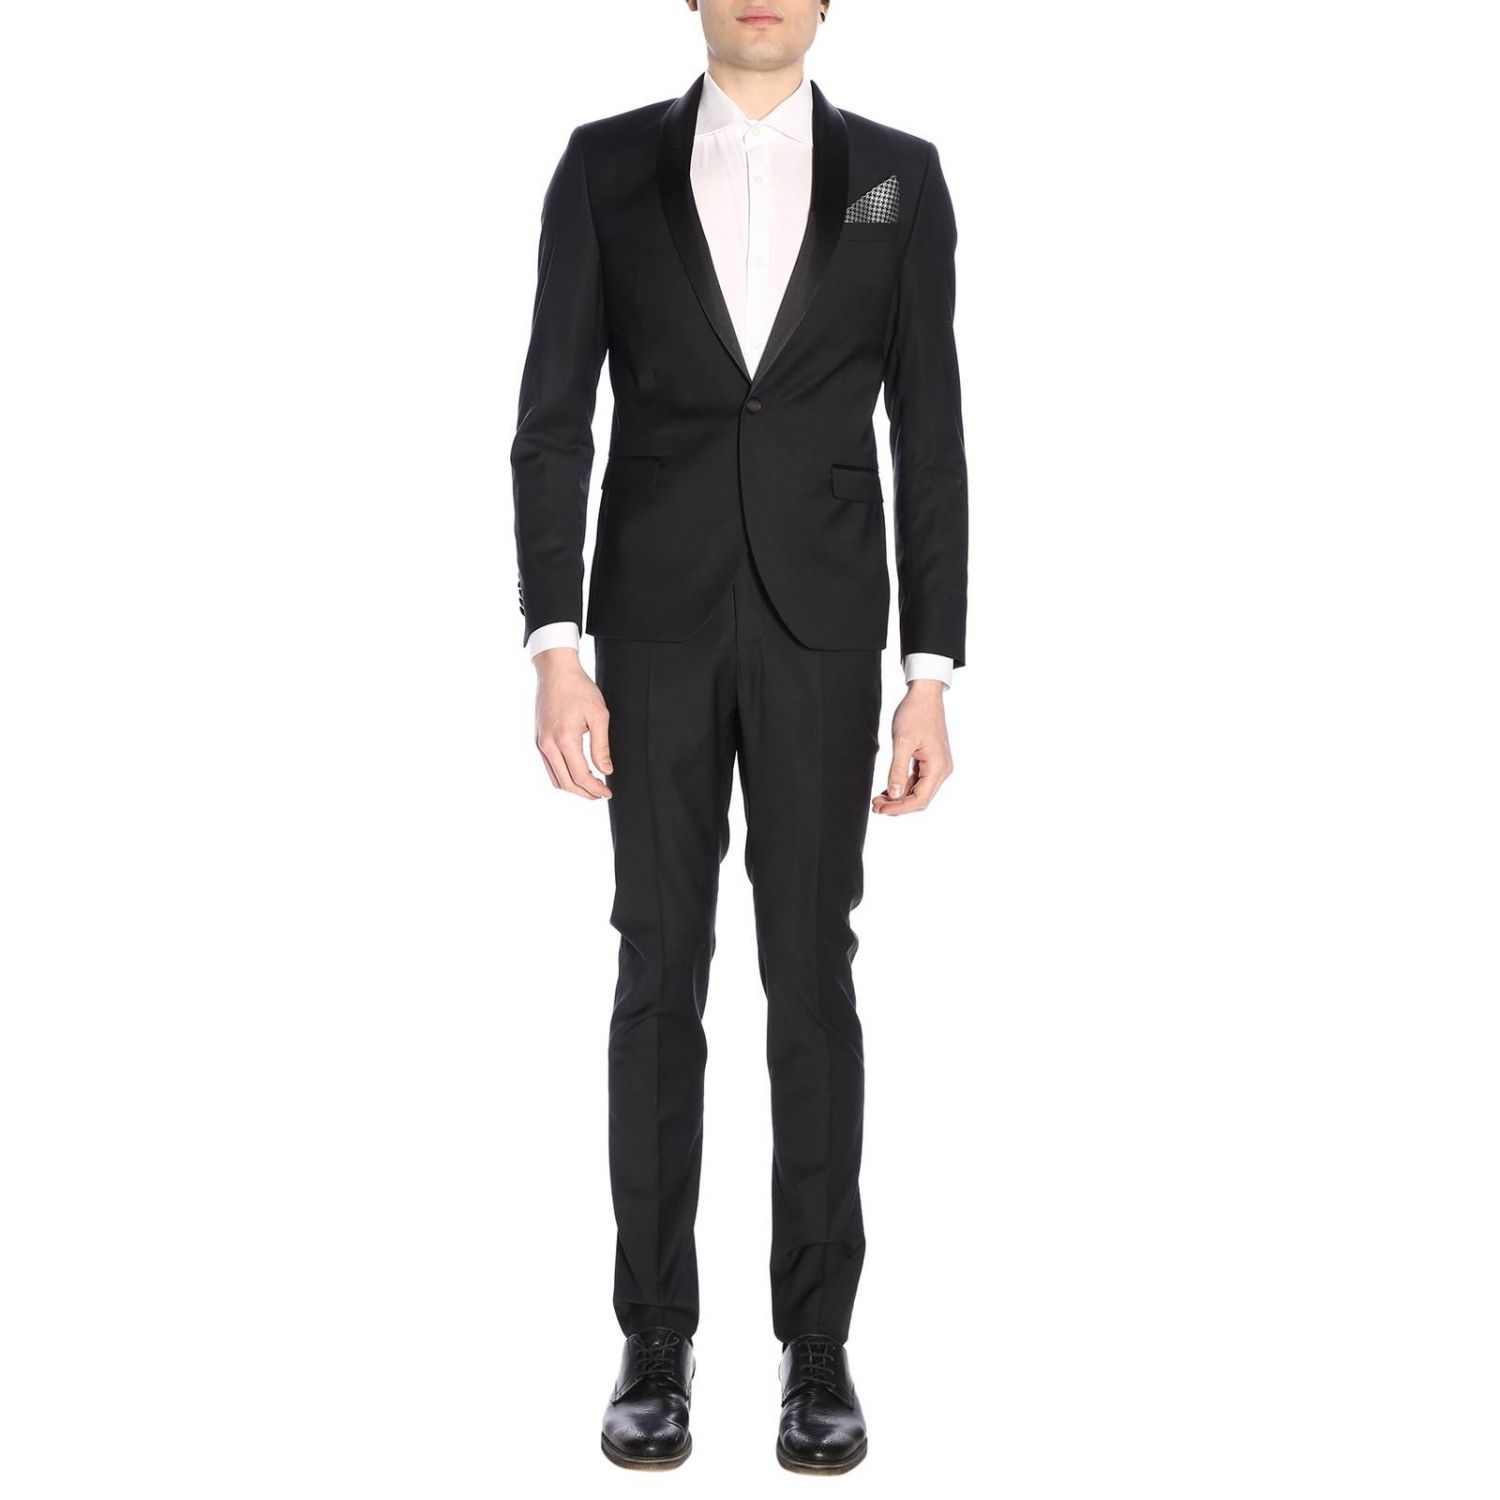 Manuel Ritz Outlet: suit for man - Black | Manuel Ritz suit 2630AR3299 ...